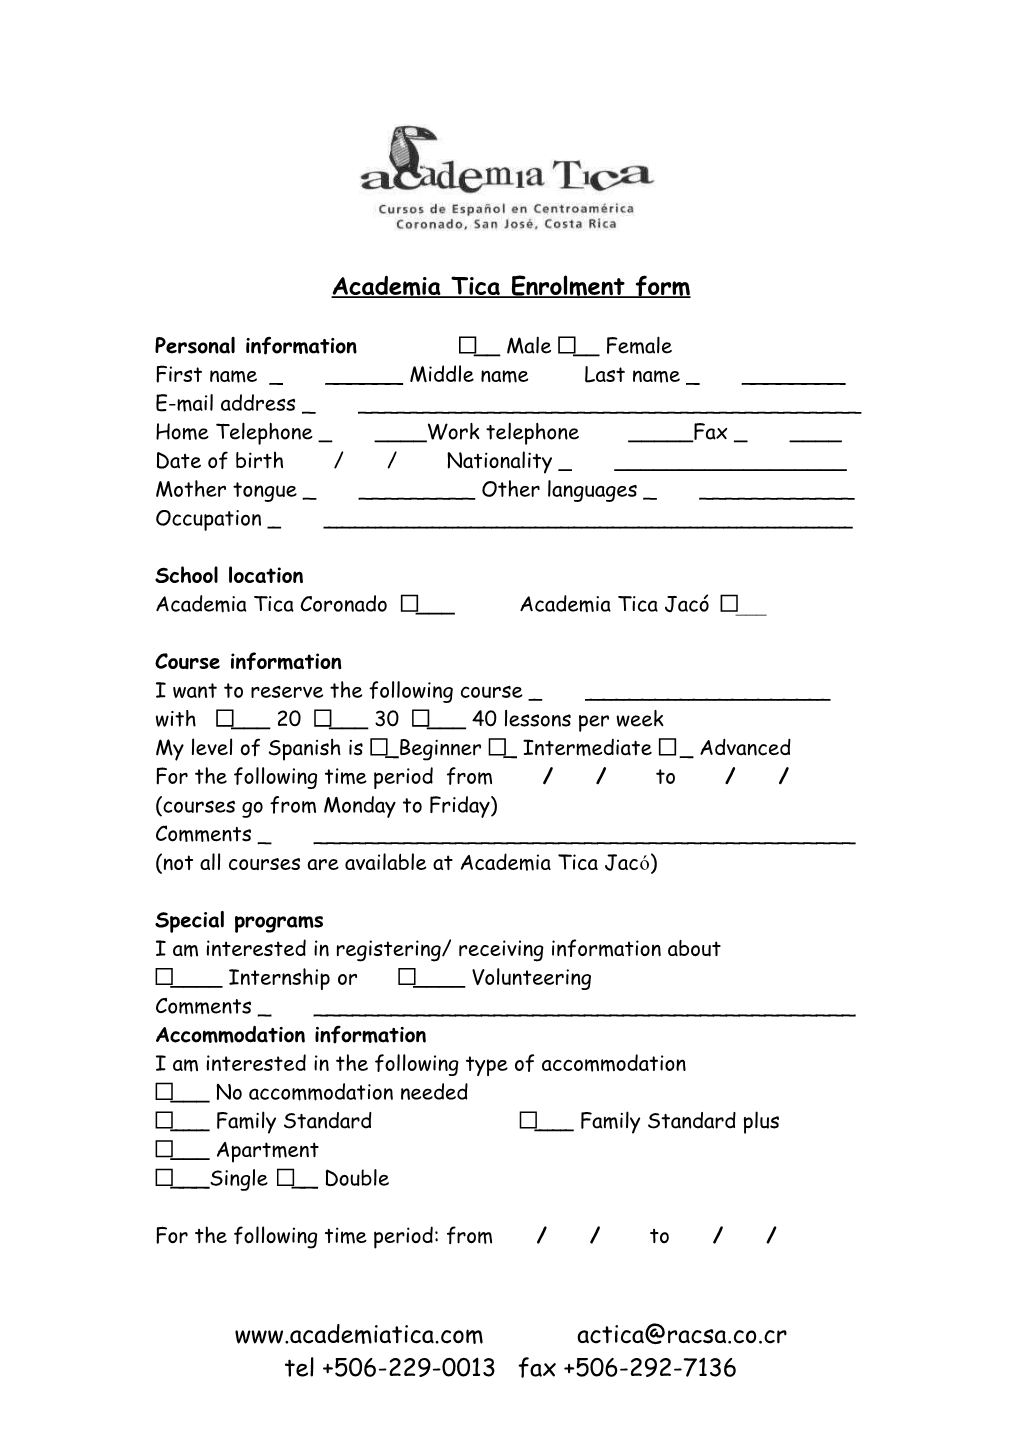 Academia Tica Enrolment Form